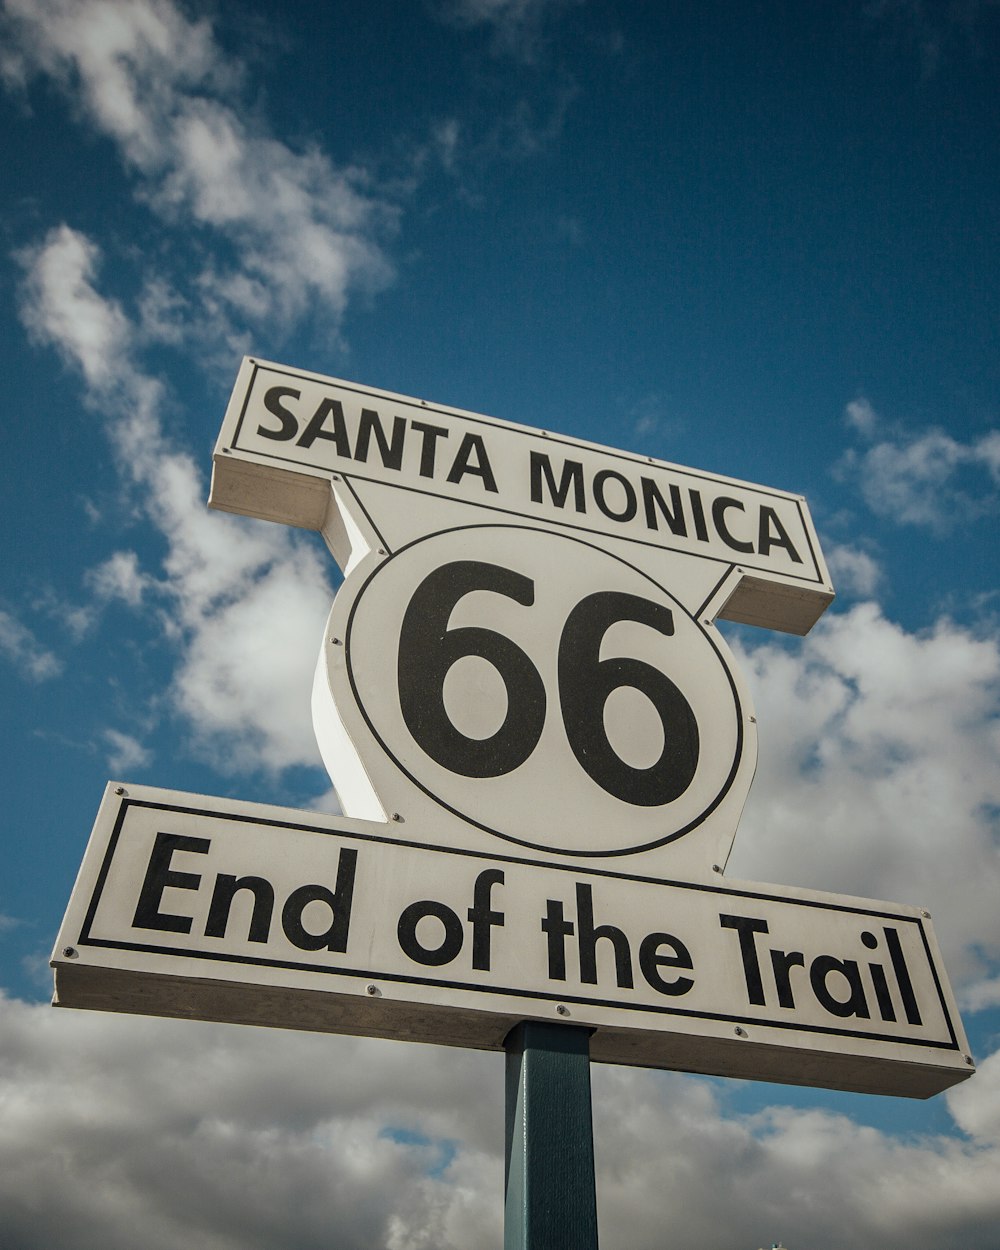 segnaletica bianca e nera Santa Monica 66 End of the Trail